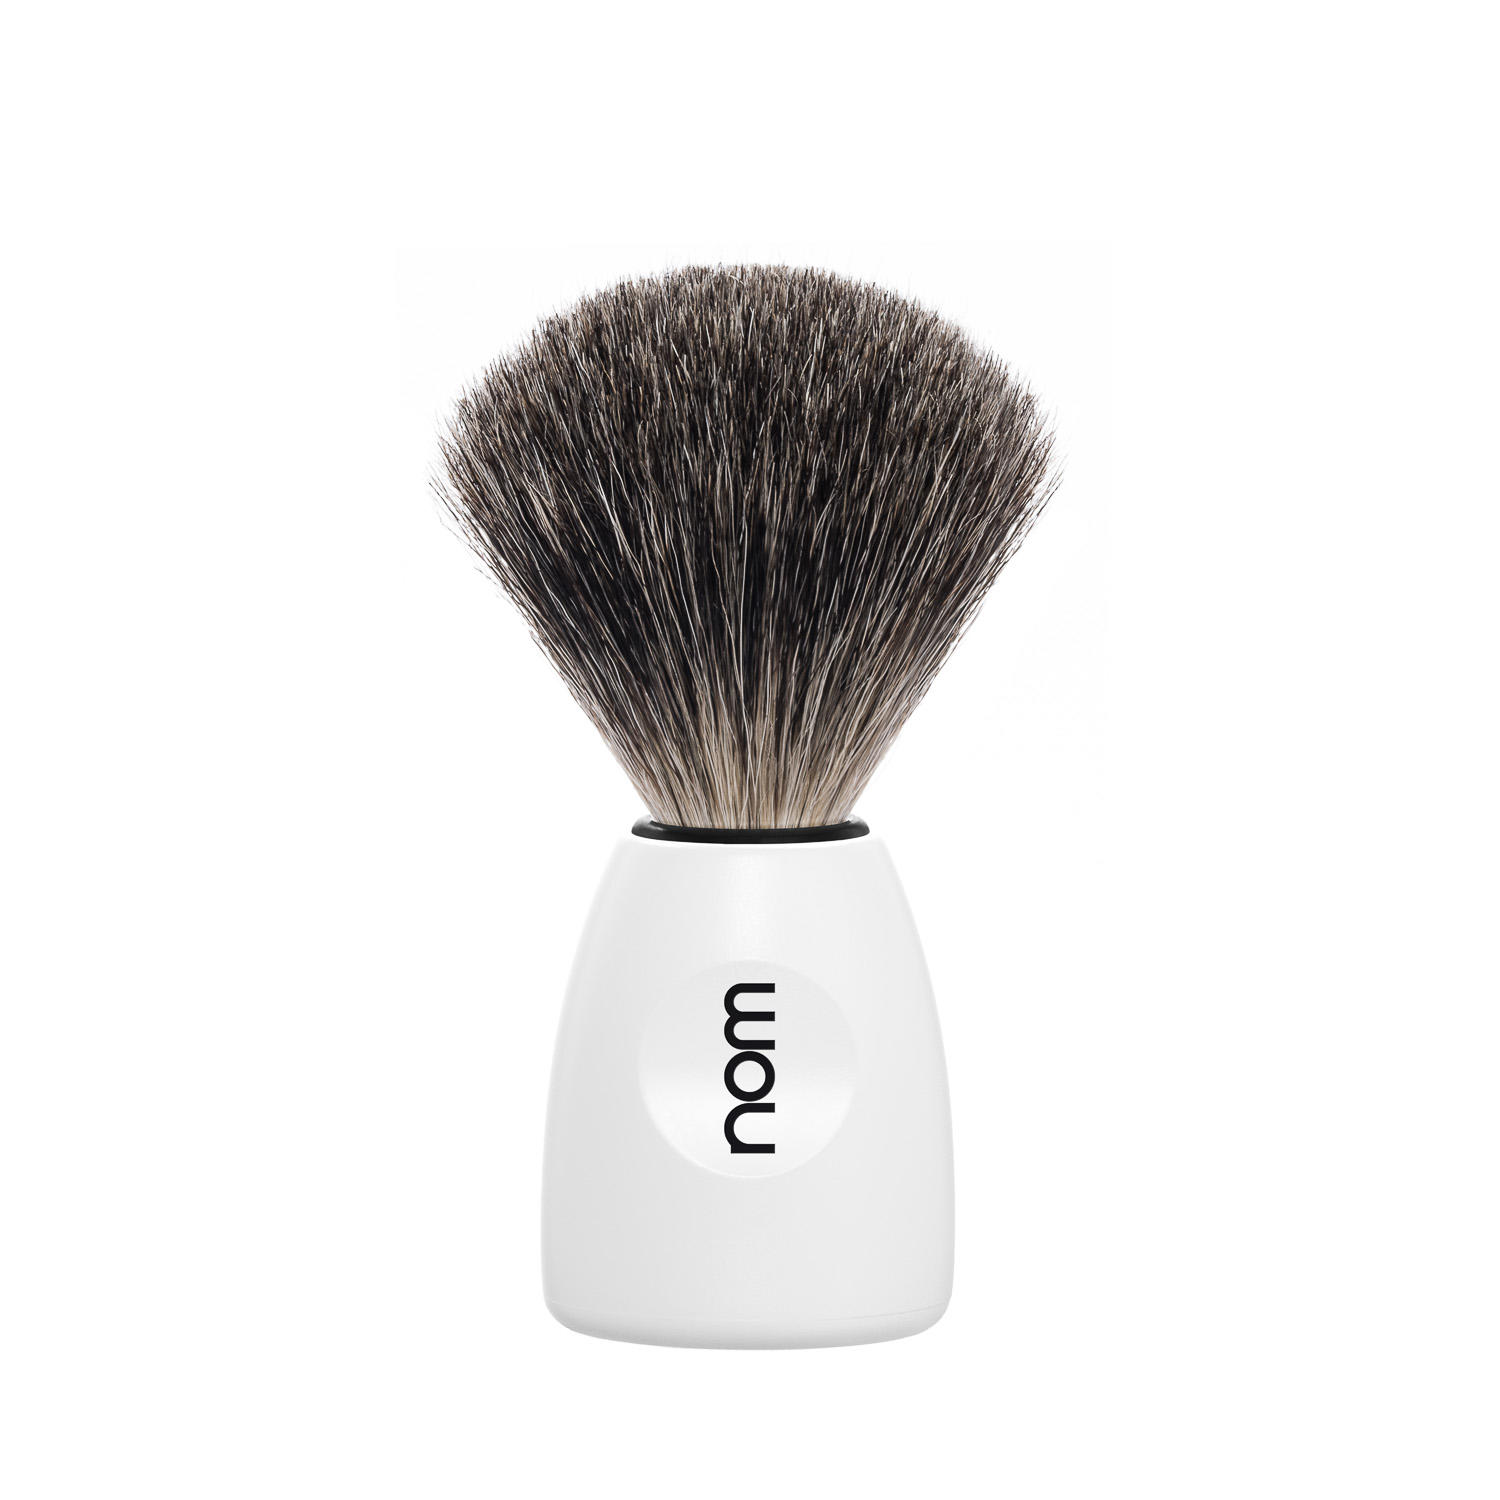 LASSE81WH NOM, LASSE white, pure badger shaving brush